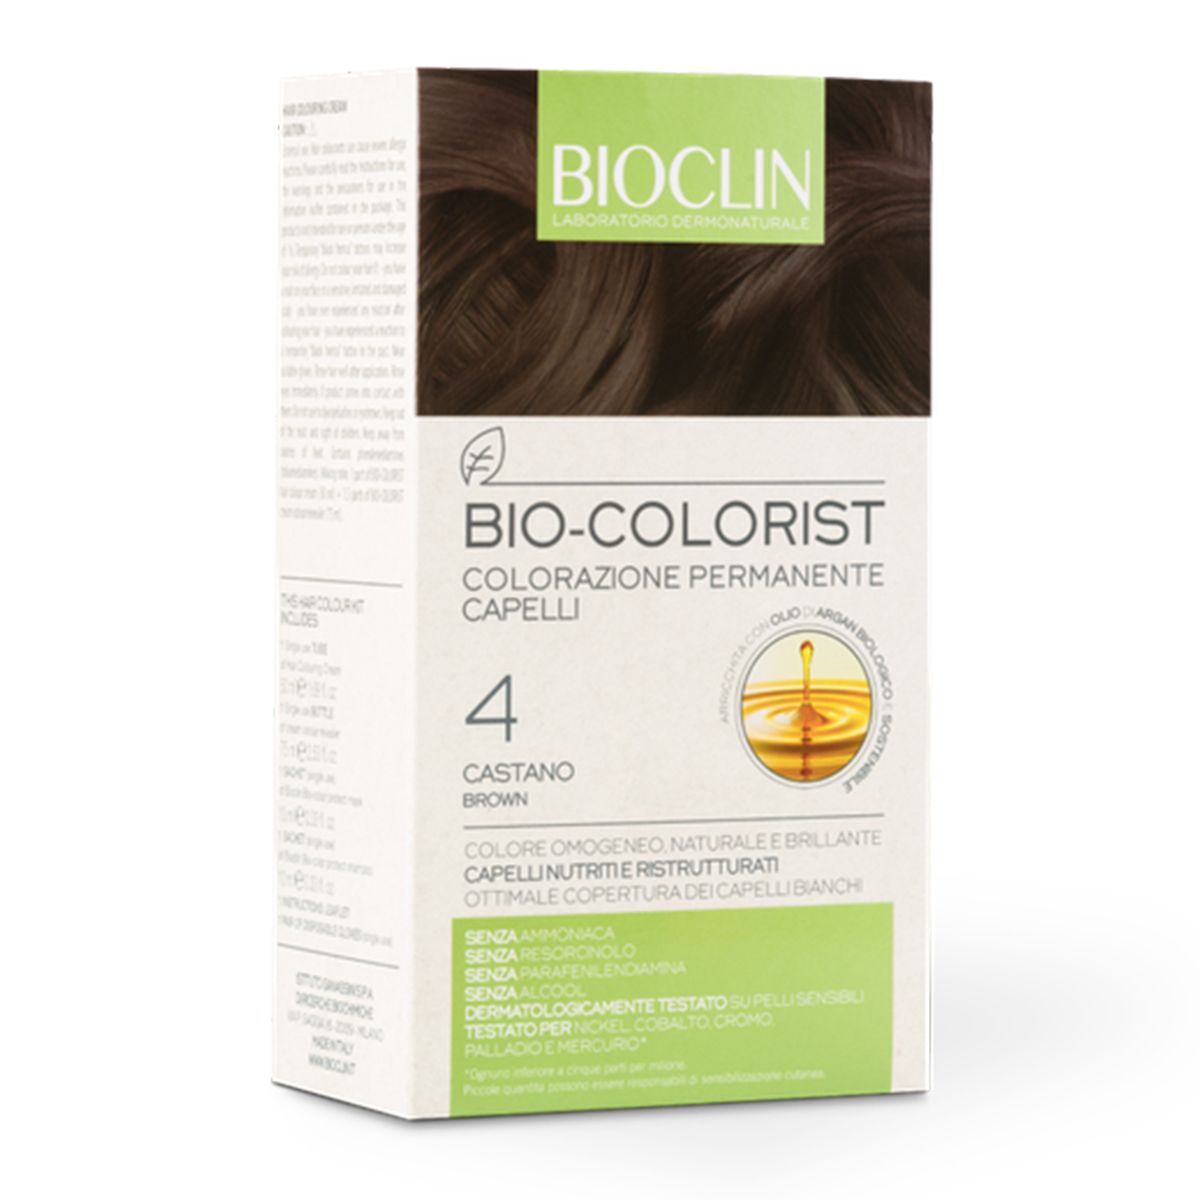 Bioclin Bio-colorist 4 Castano